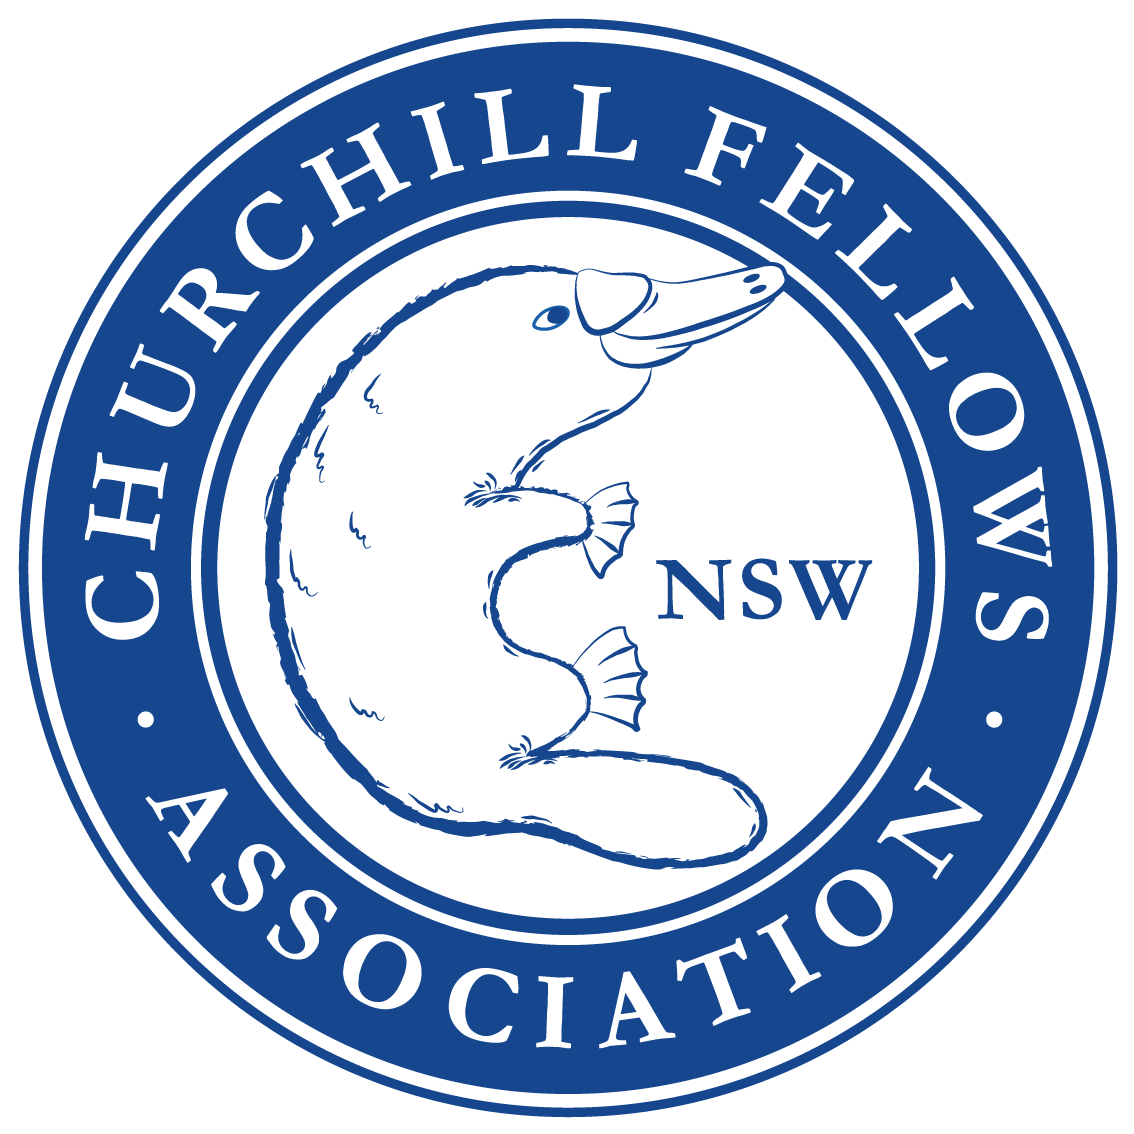 Churchill Fellows Association of NSW